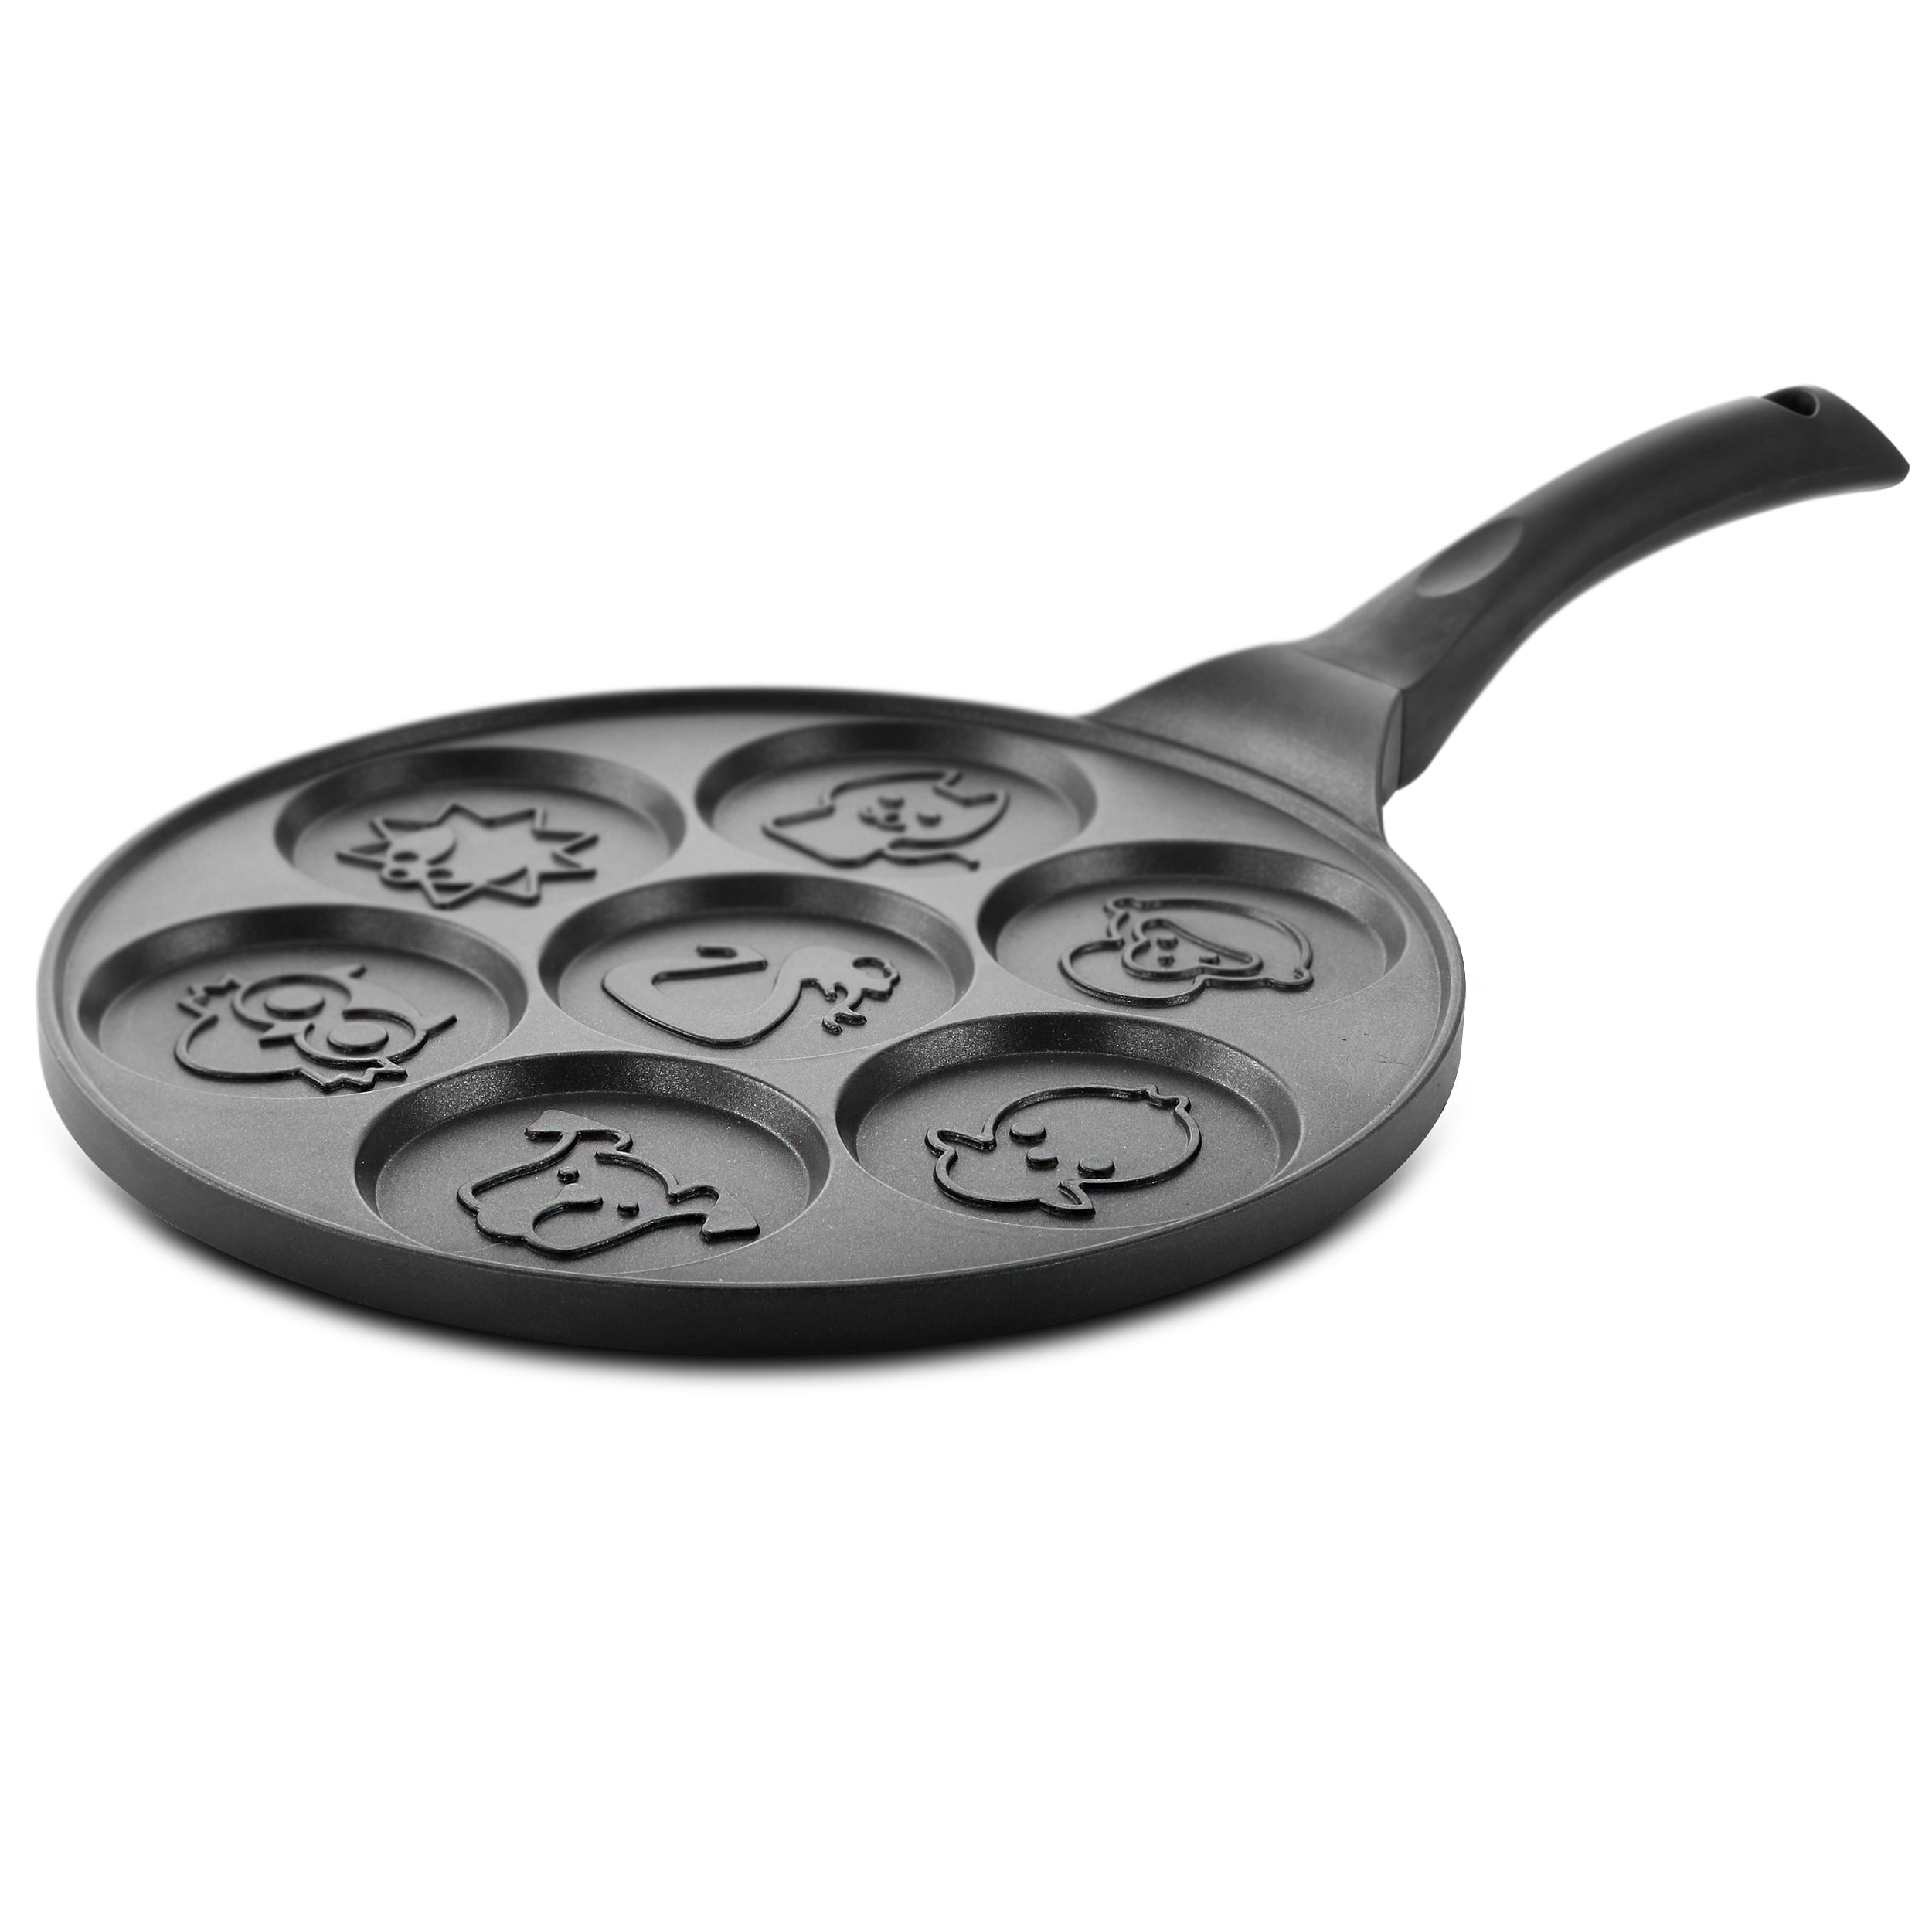 KRETAELY Nonstick Pancake Pan Pancake Griddle with 7-Hole Design Mini Pancake Maker with PFOA Free Coating-Black